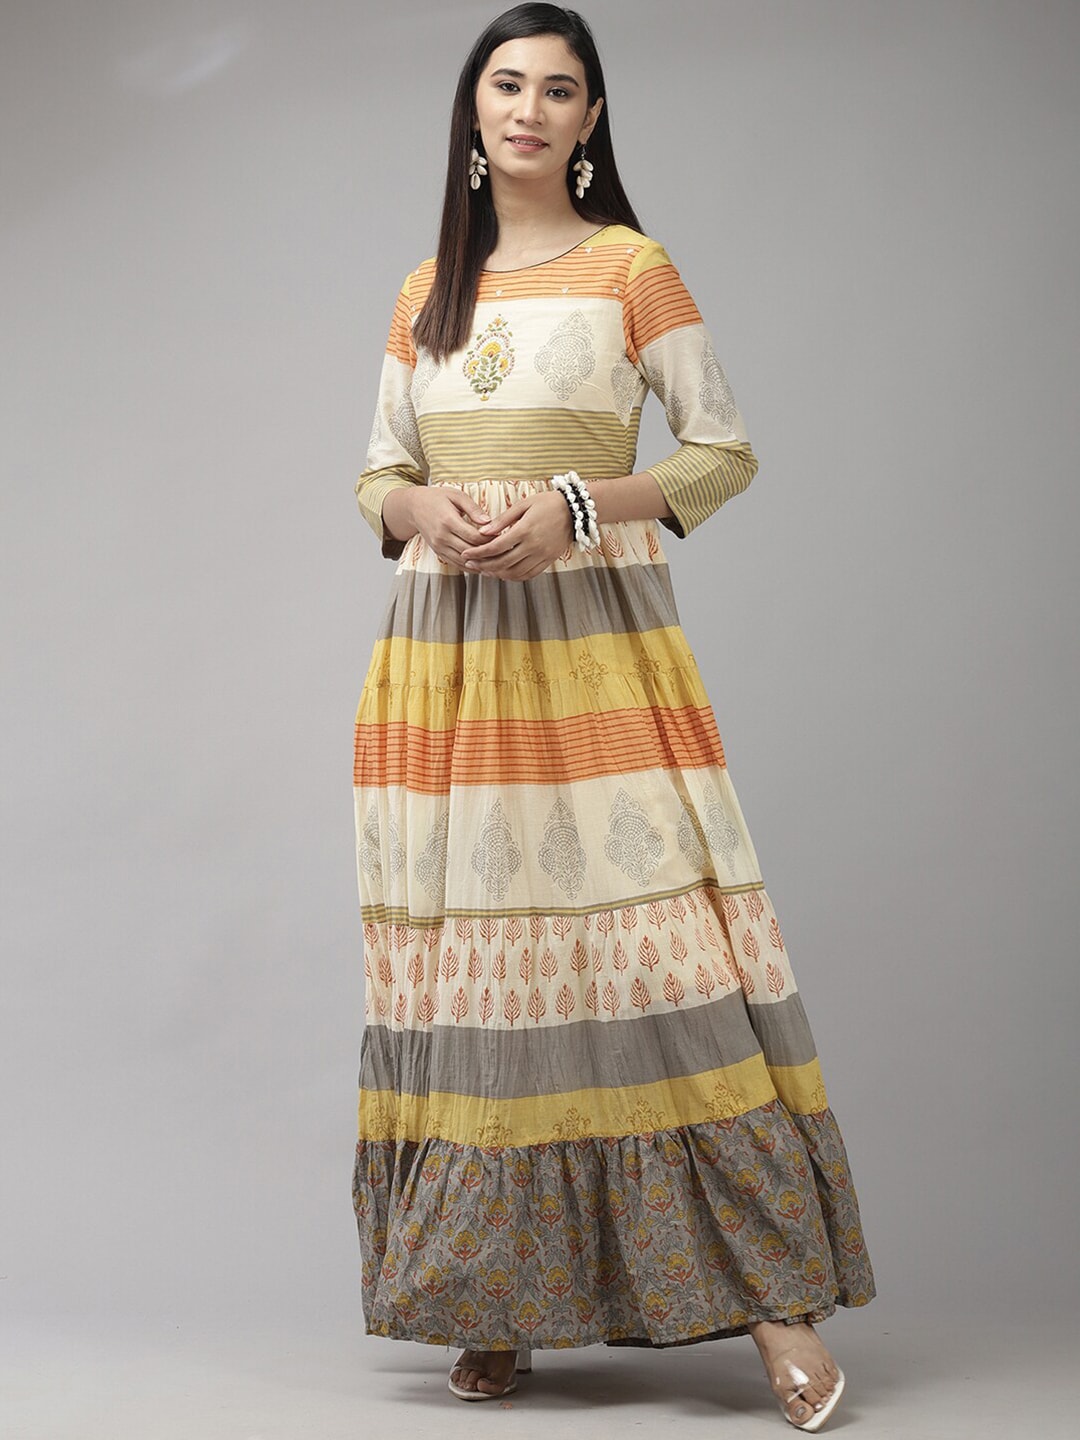 Indo Era Ethnic Motifs Cotton Maxi Dress Price in India